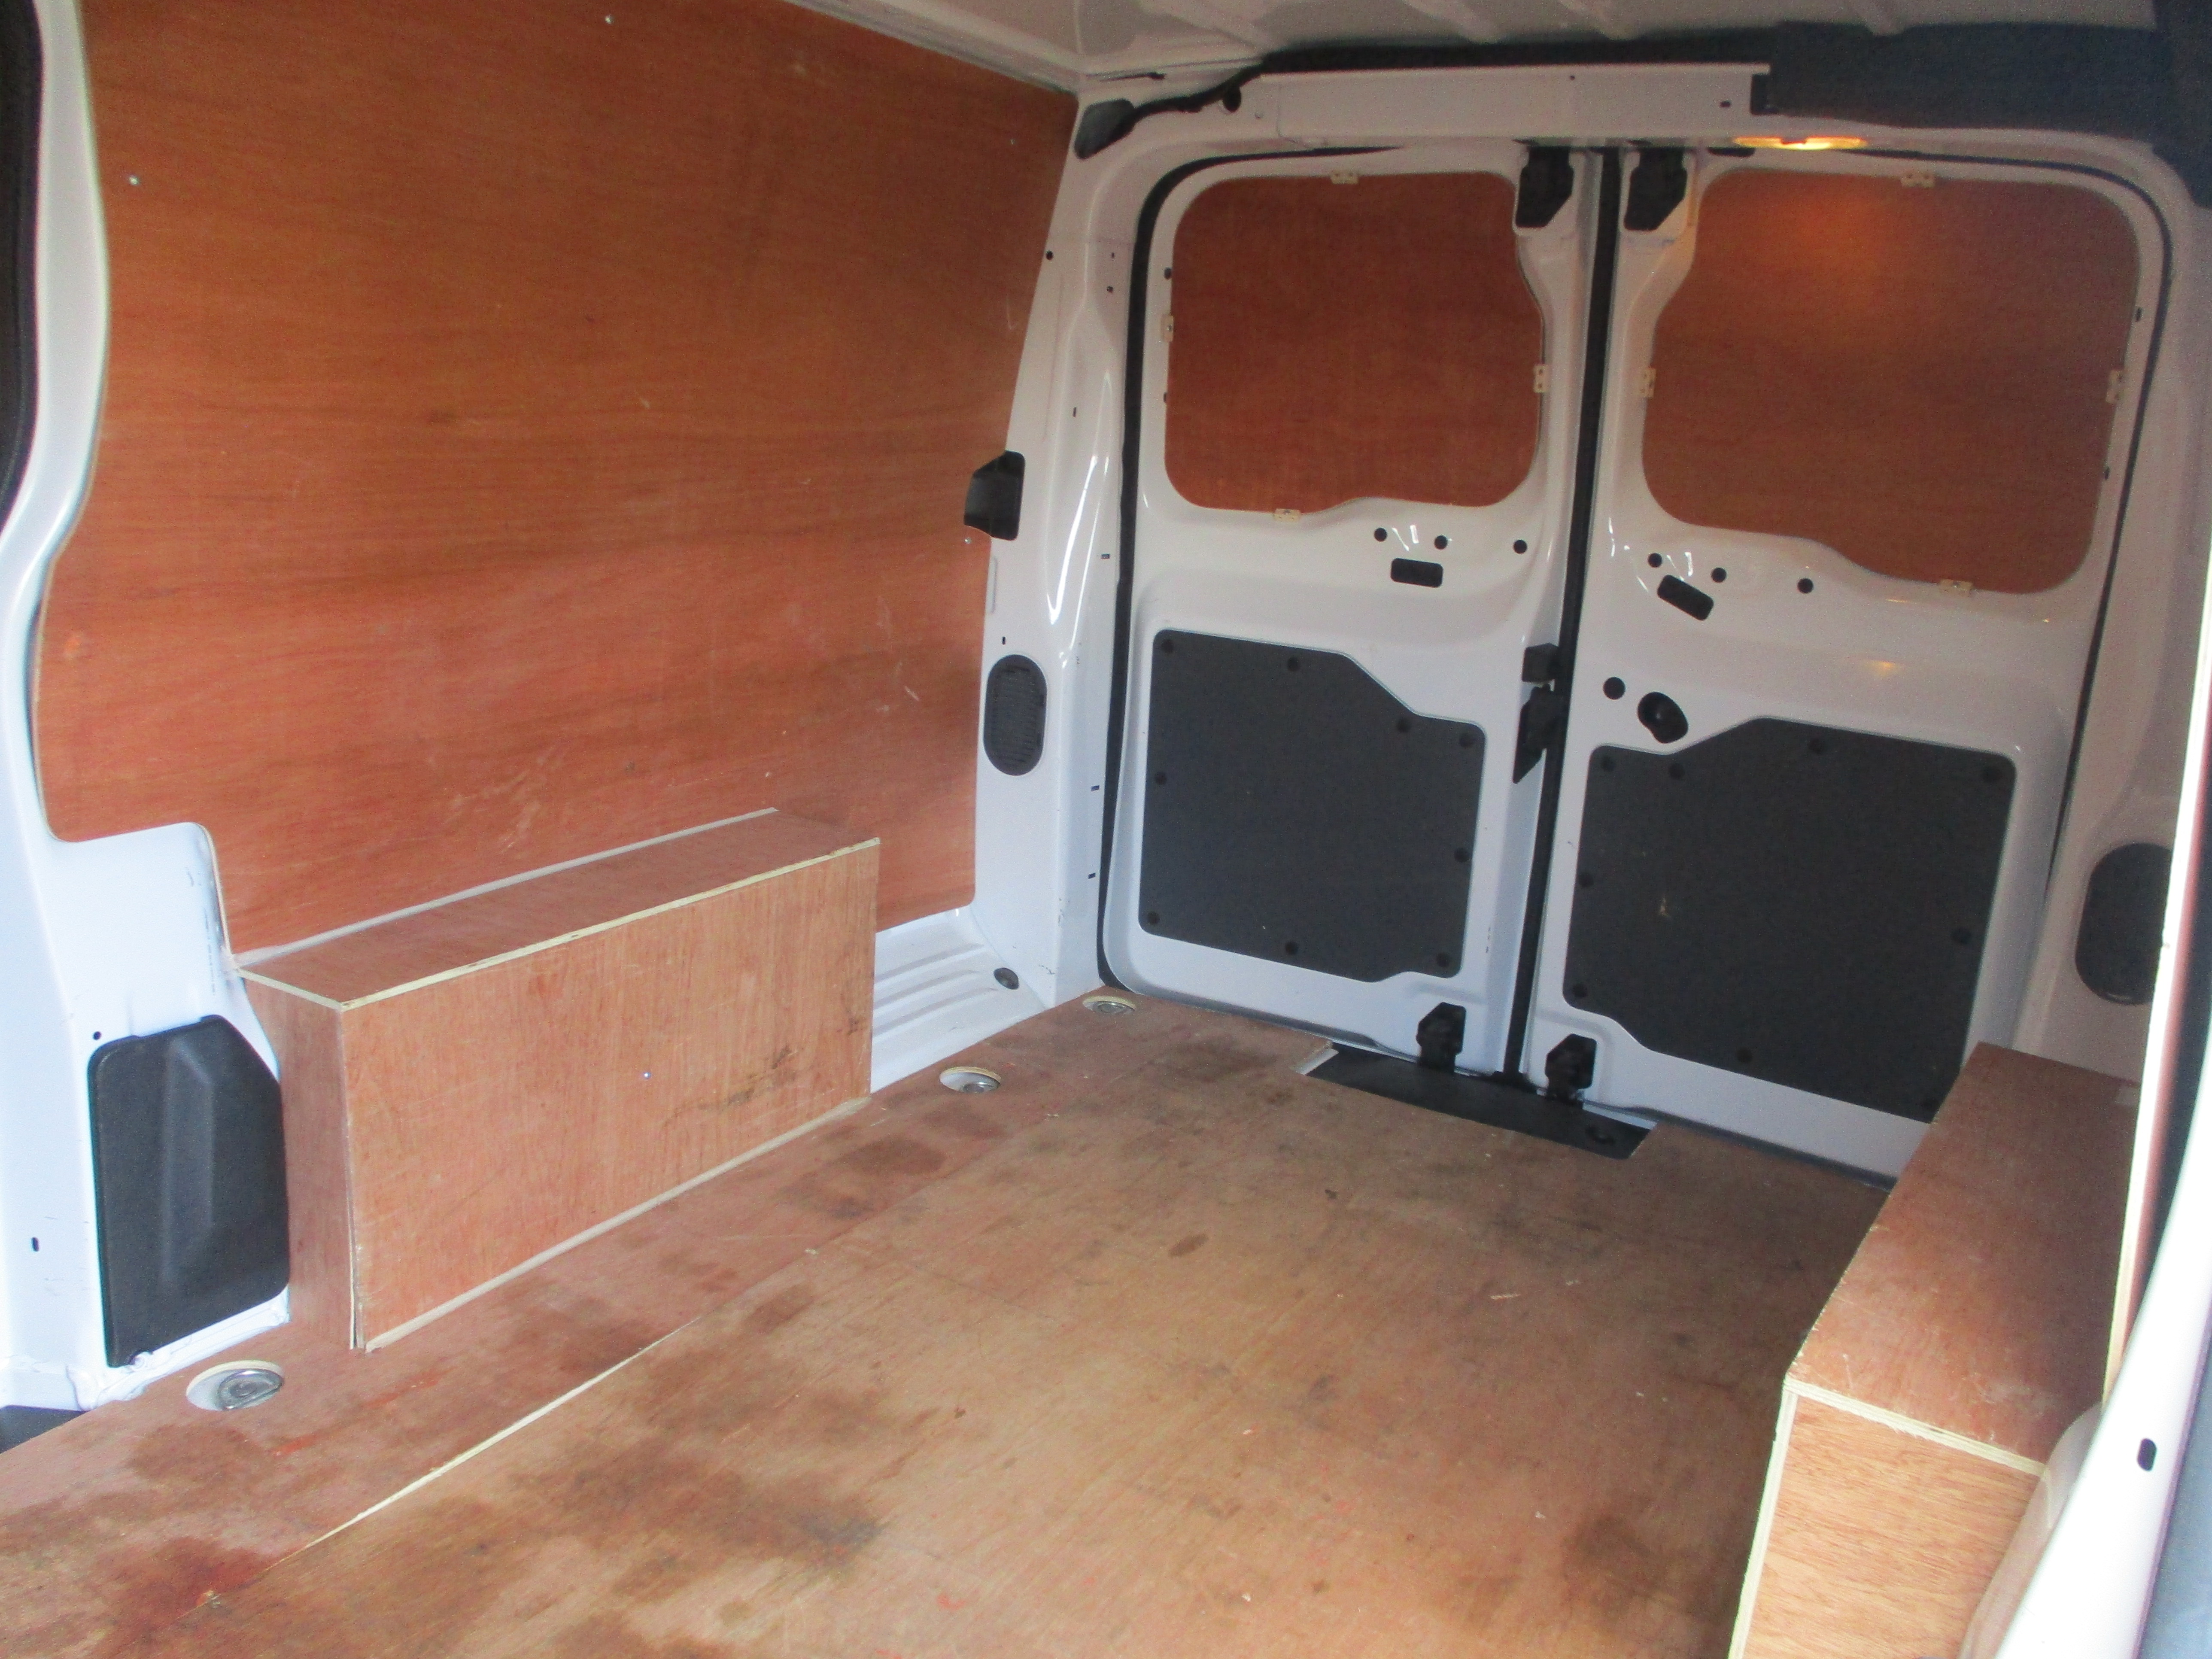 Vauxhall Vivaro ( NEW MODEL ) L2H1 LWB 1.5 Diesel Sportive Panel Van with AIR CON